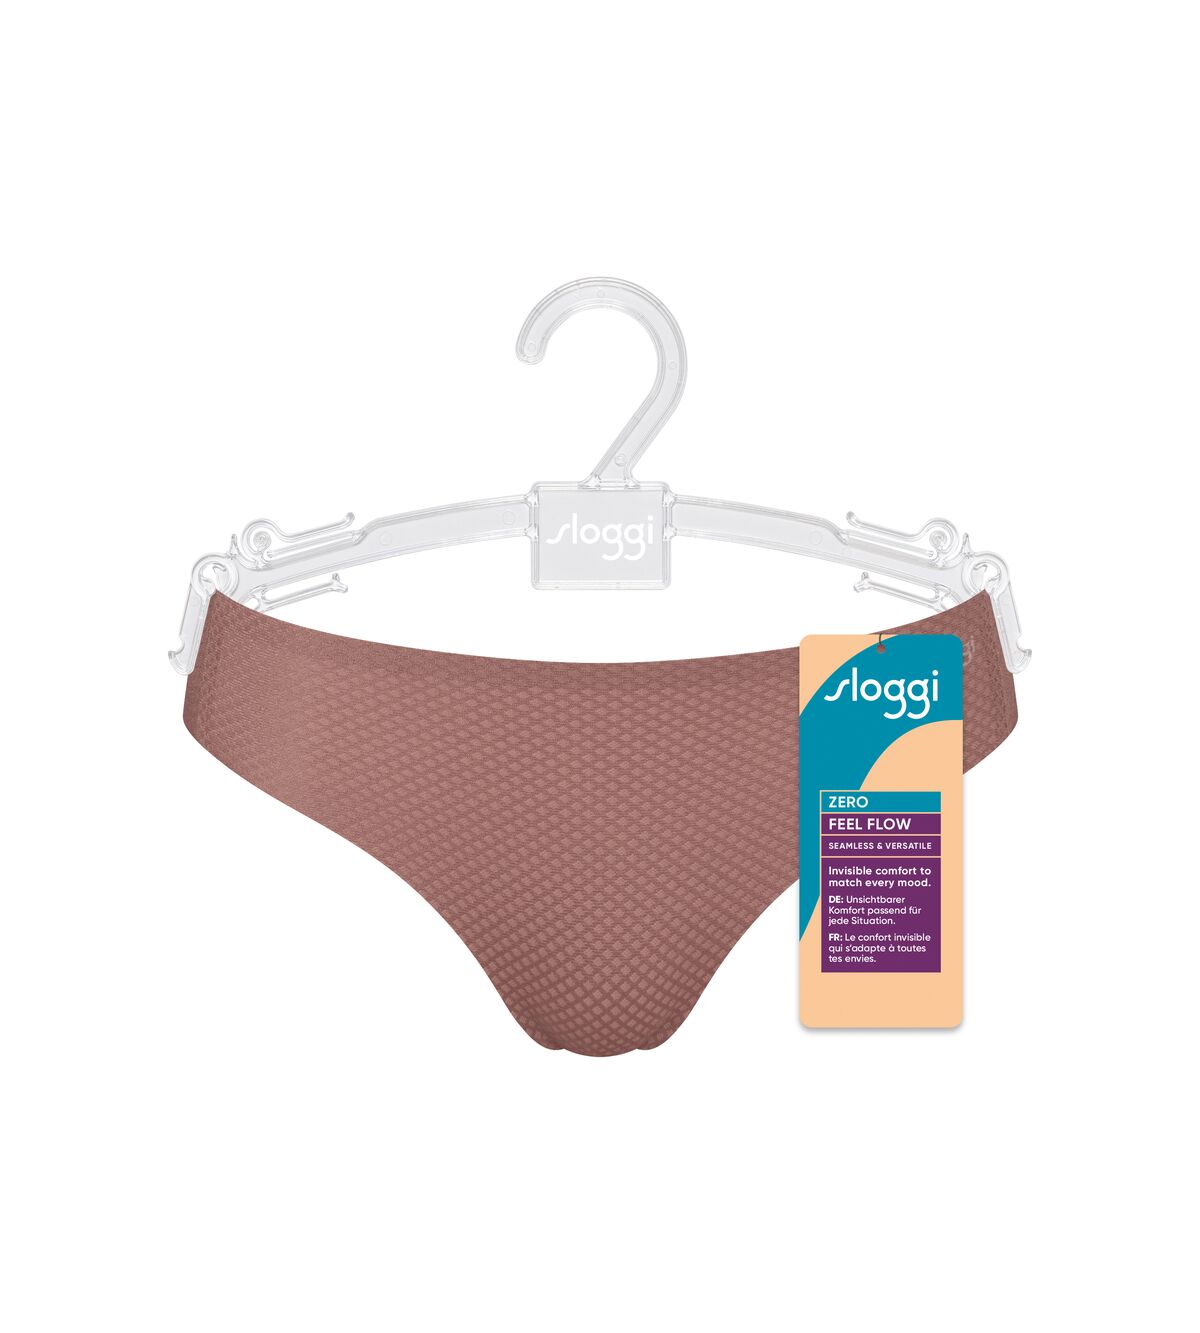 Women's Seamless Underwear, Sloggi